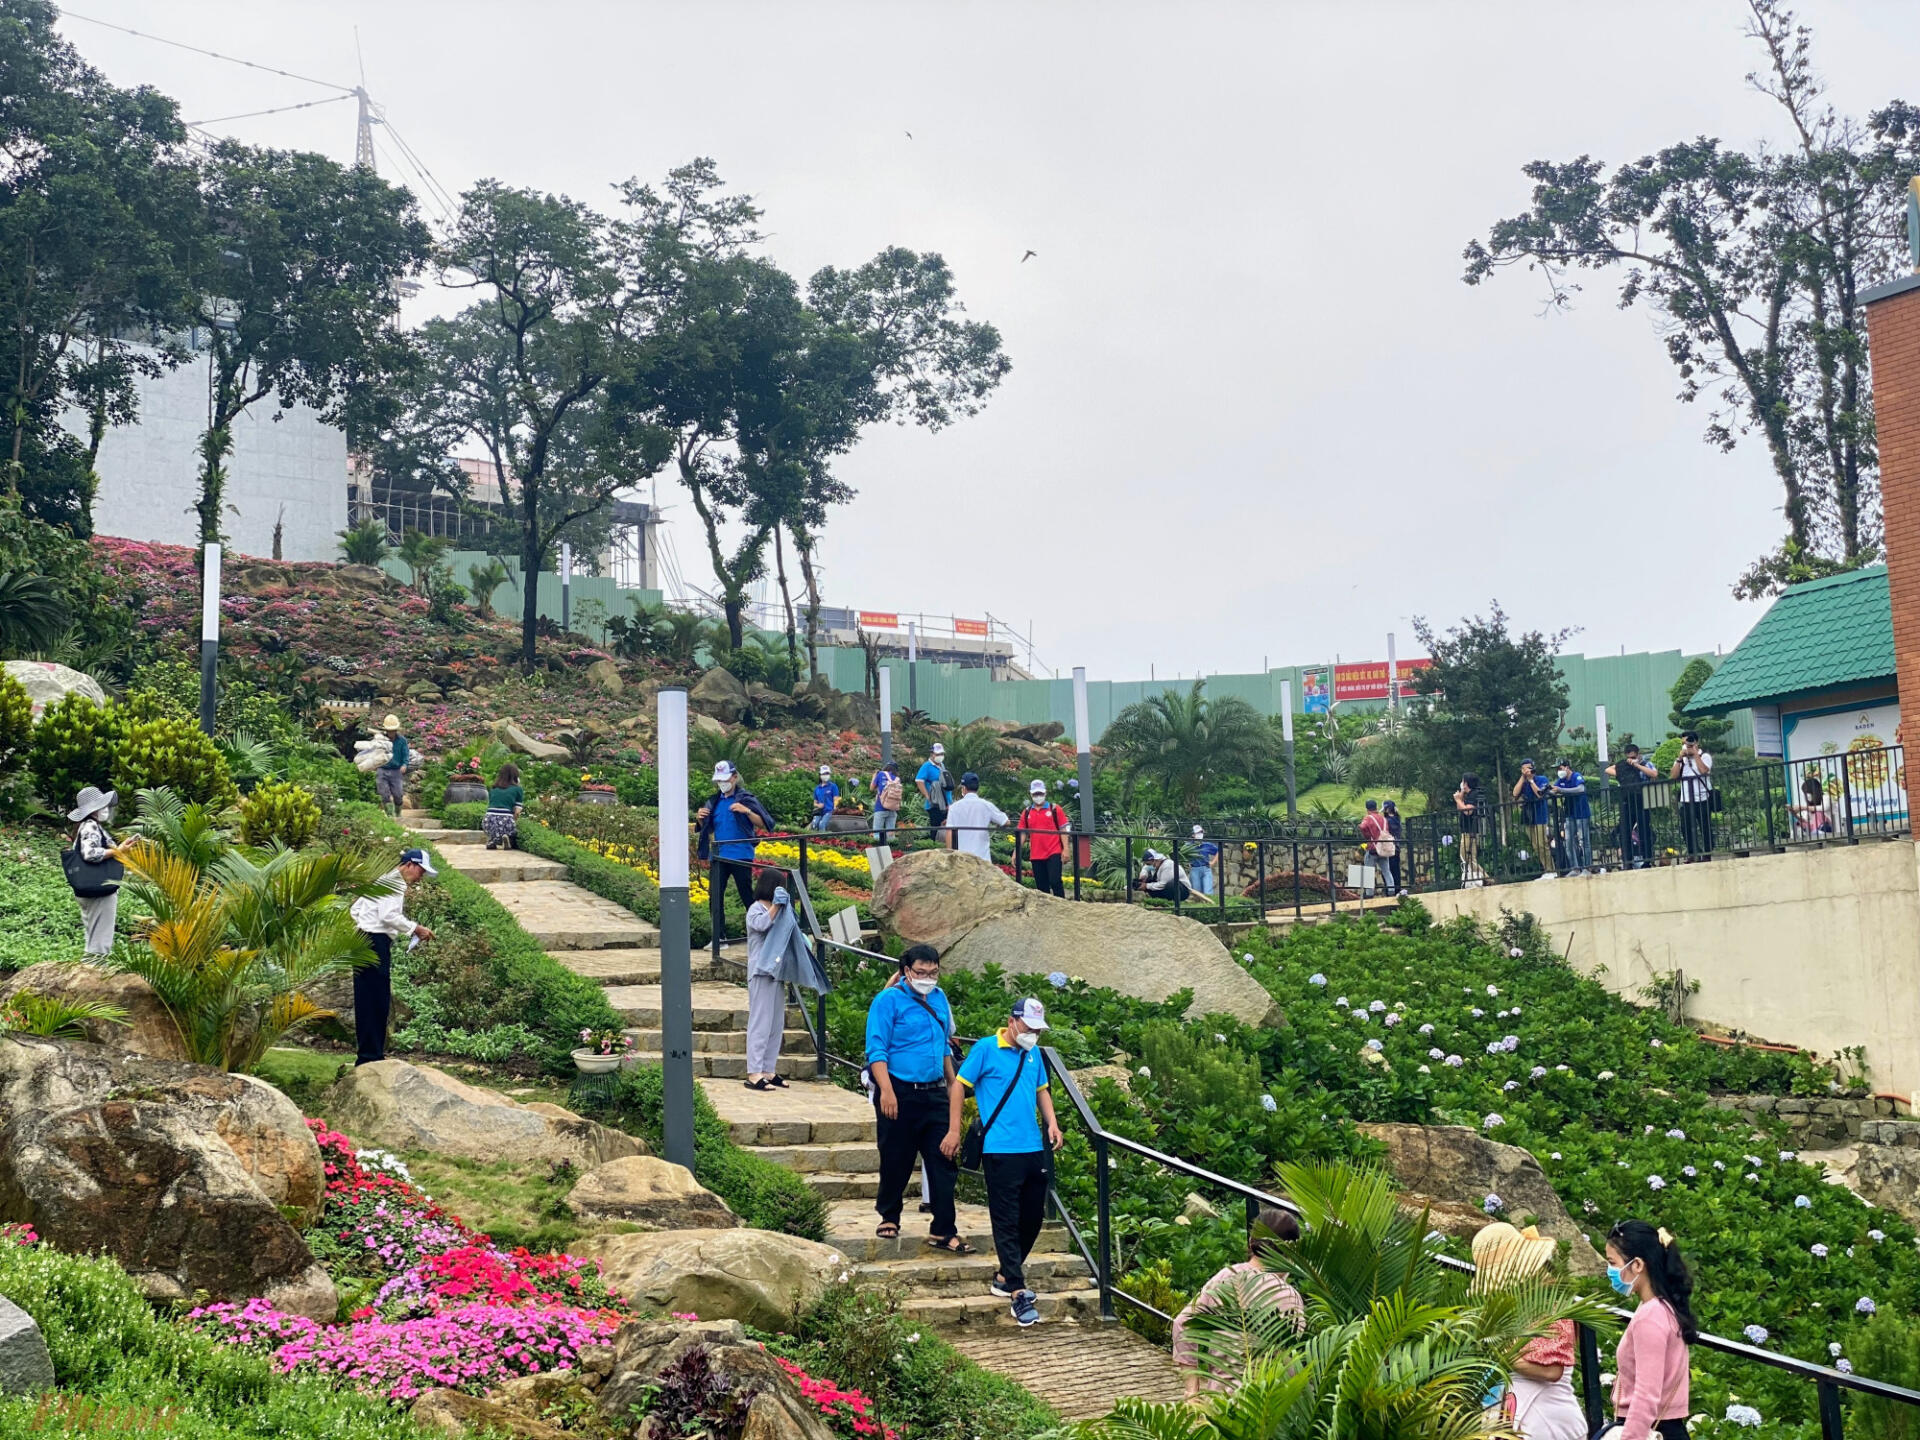 Đoàn khách đầu tiên với số lượng 60 người khởi hành từ TPHCM đi Tây Ninh ngày (18/10) do công ty vận chuyển và du lịch Saco (Saco Travel) tổ chức vừa hoàn thành chuyến tốt đẹp, khách tham quan  chuyến 